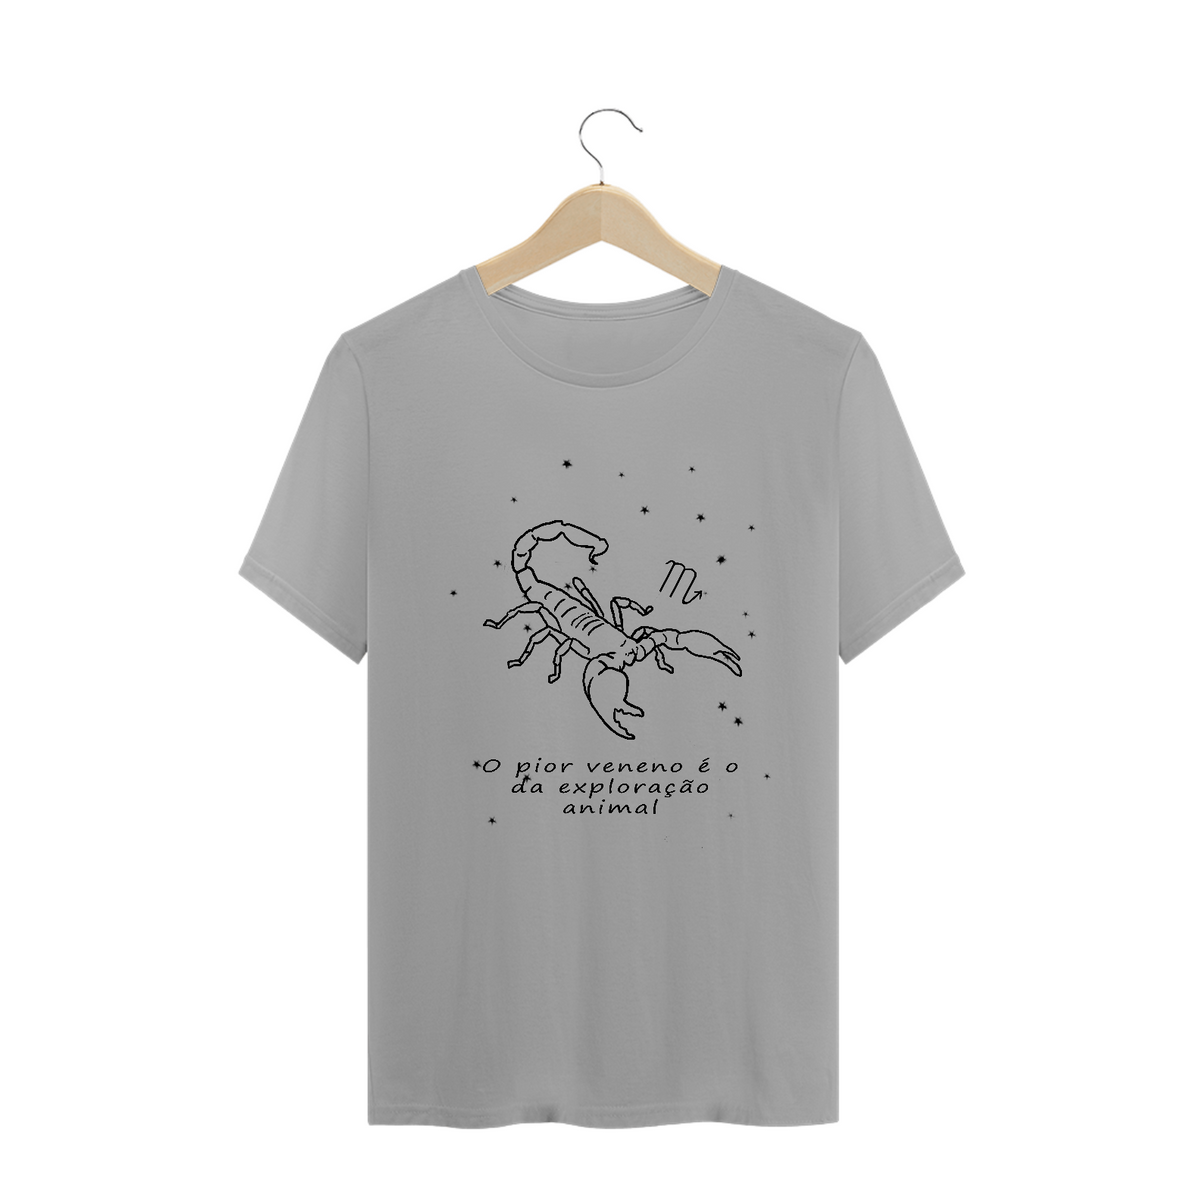 Nome do produto: Camiseta Unissex | Escorpião | O pior veneno é o da exploração animal | P&B